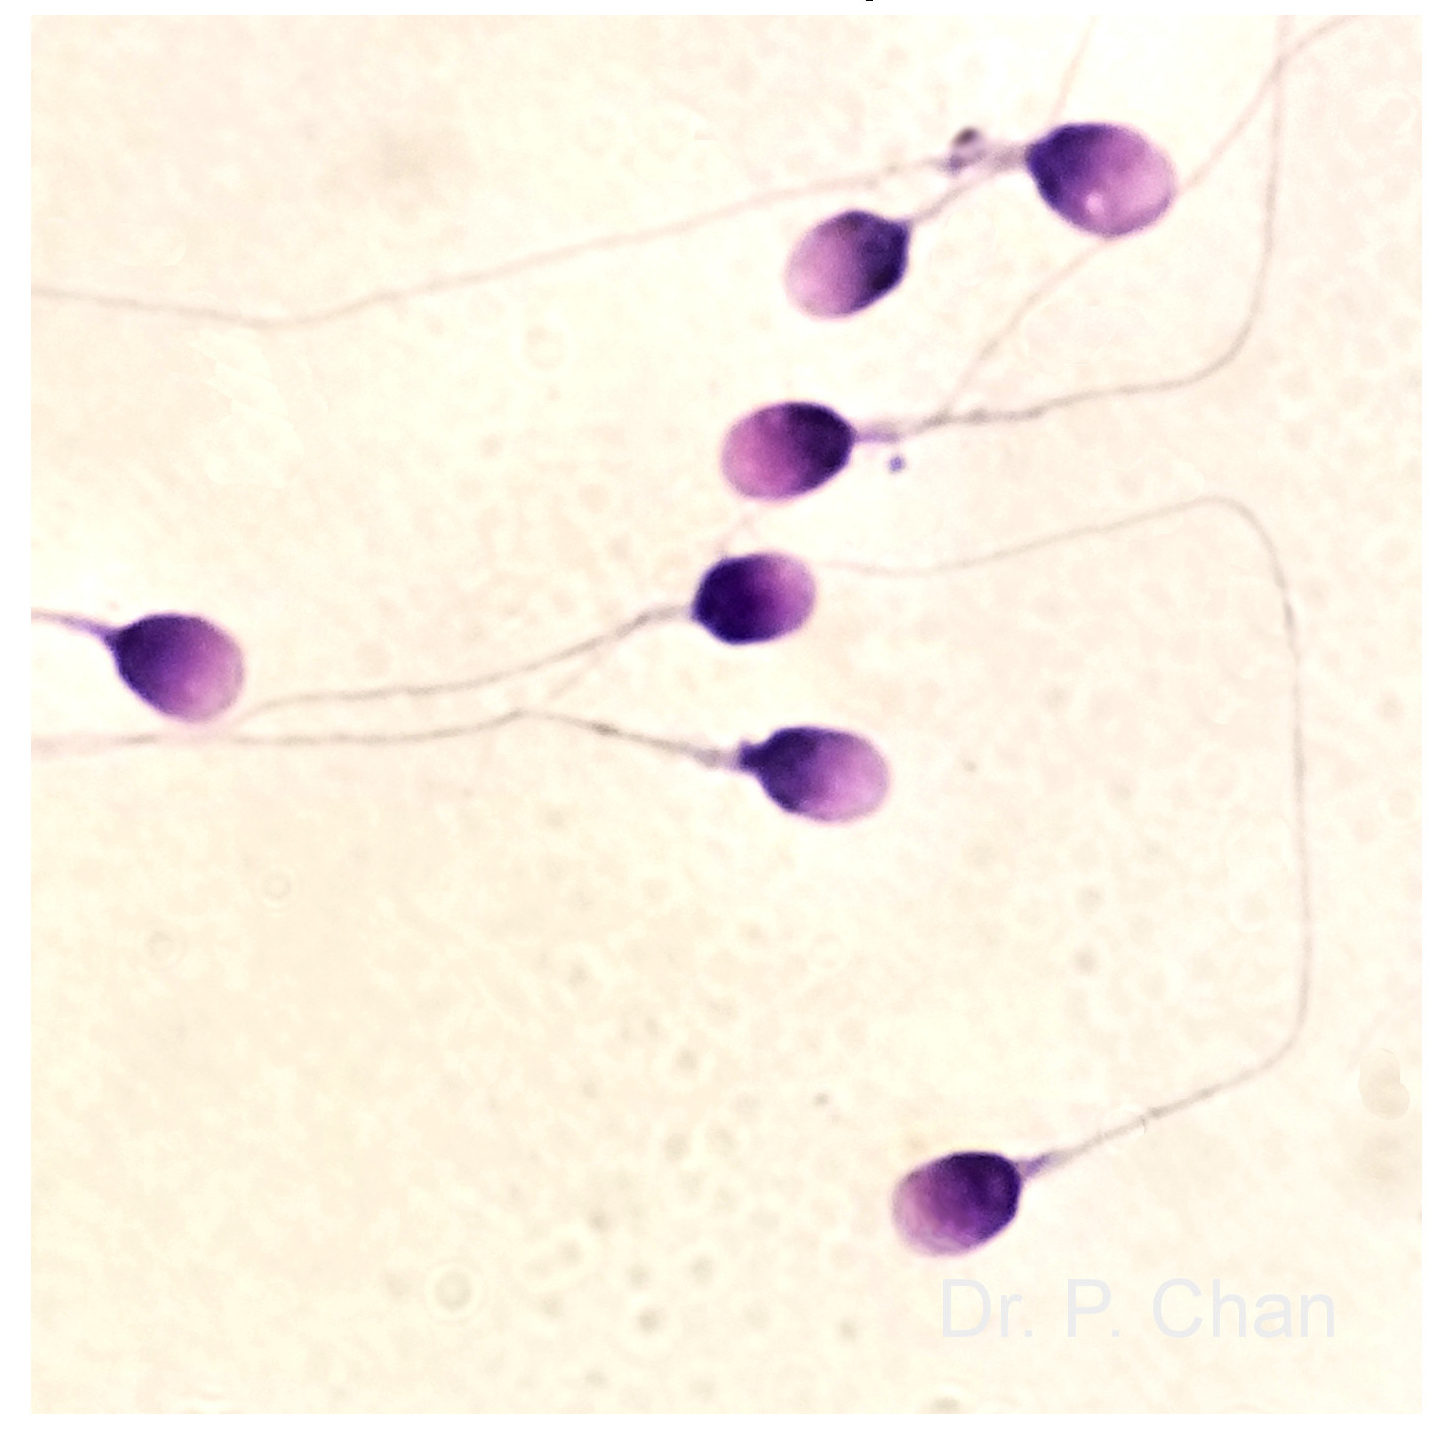 сперма в детской попке фото 107